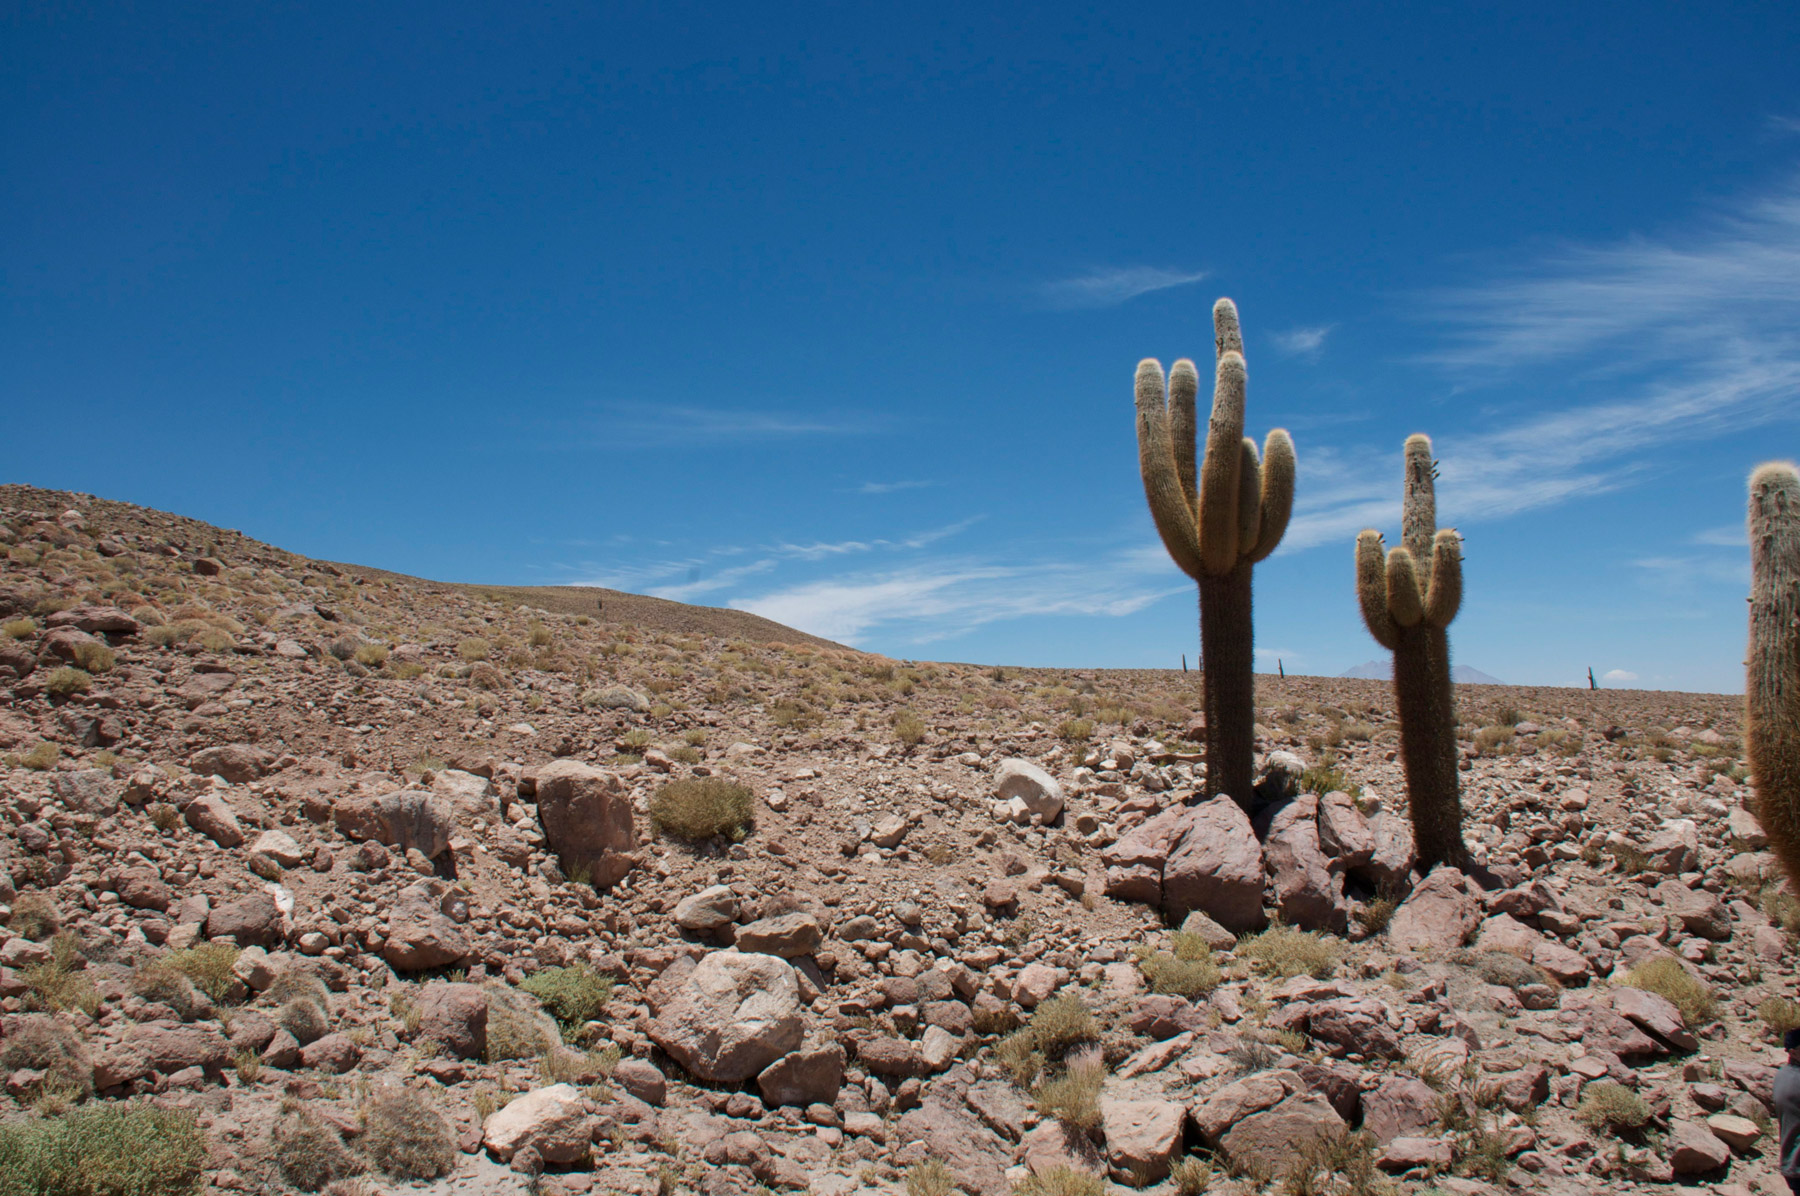 Des cactus géants de l’Atacama